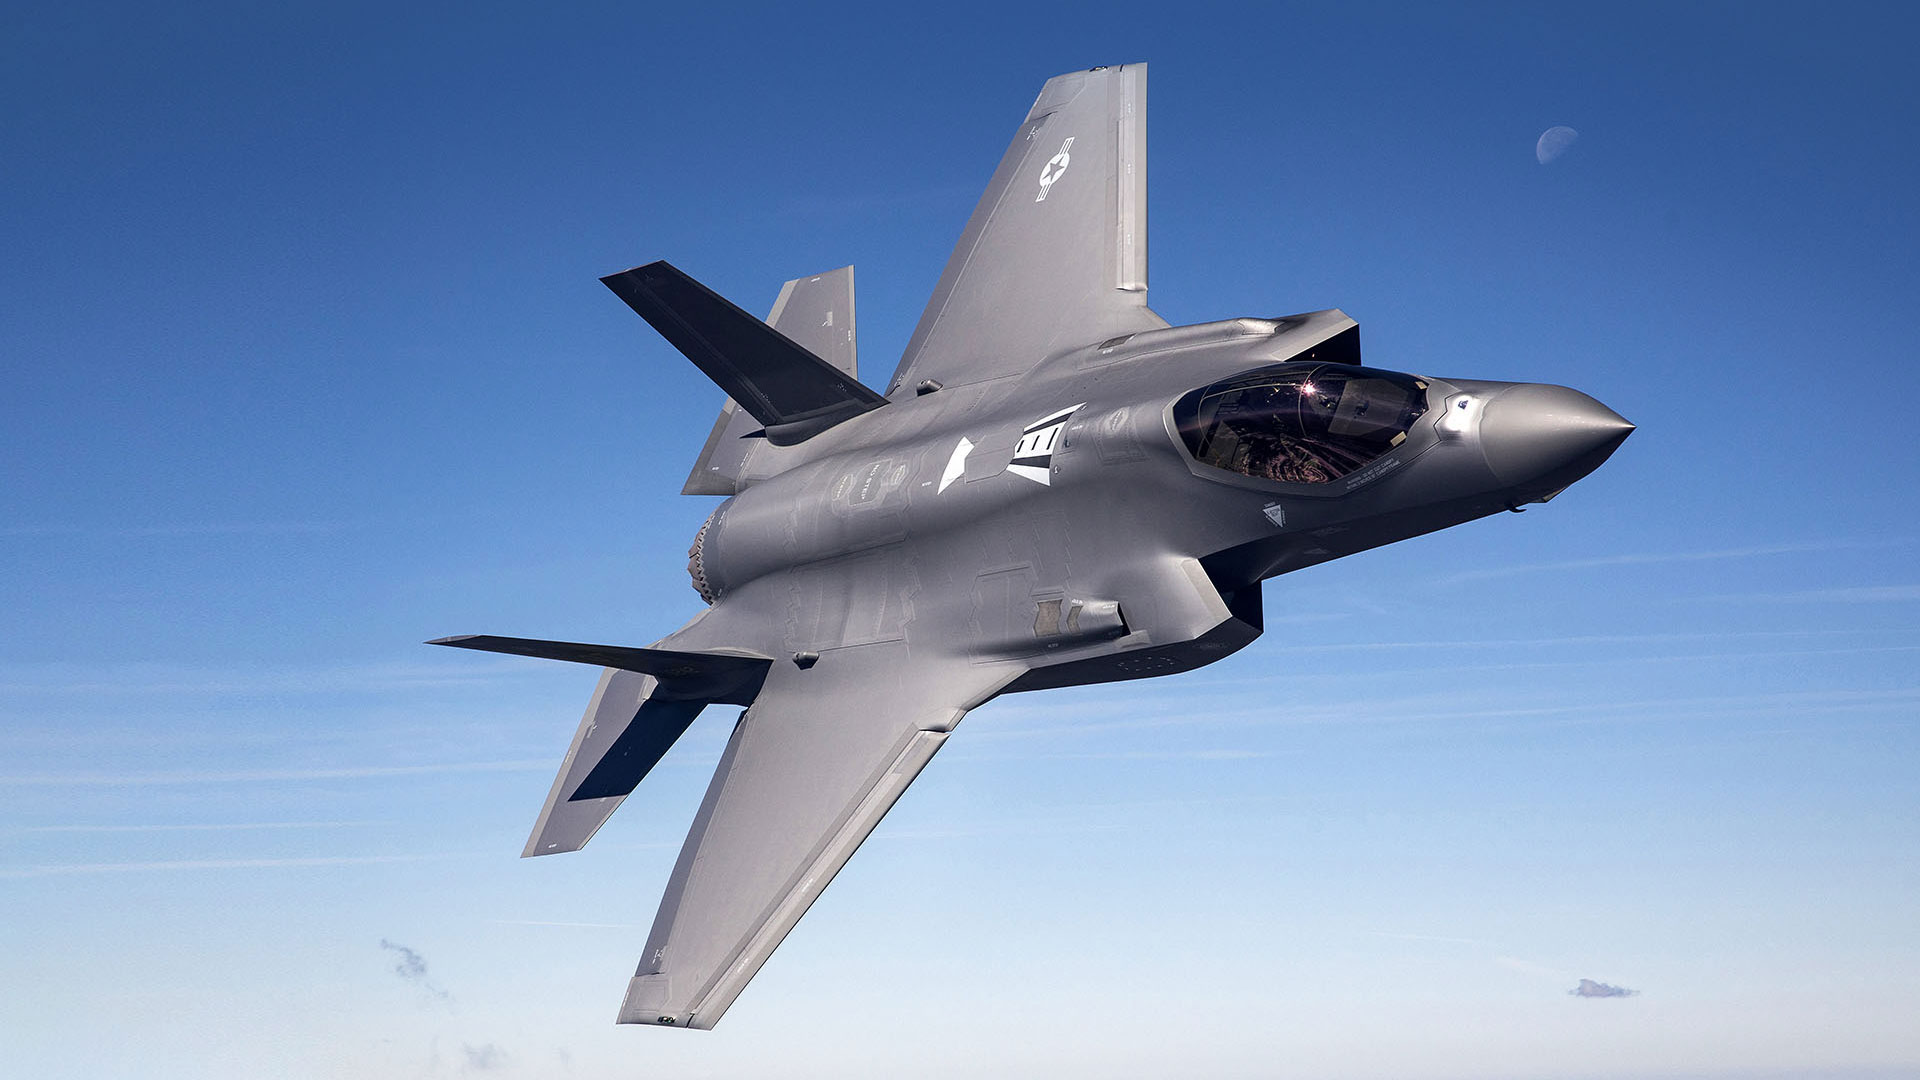 Mahkamah perintah Belanda sekat hantar alat ganti pesawat F-35 ke Israel